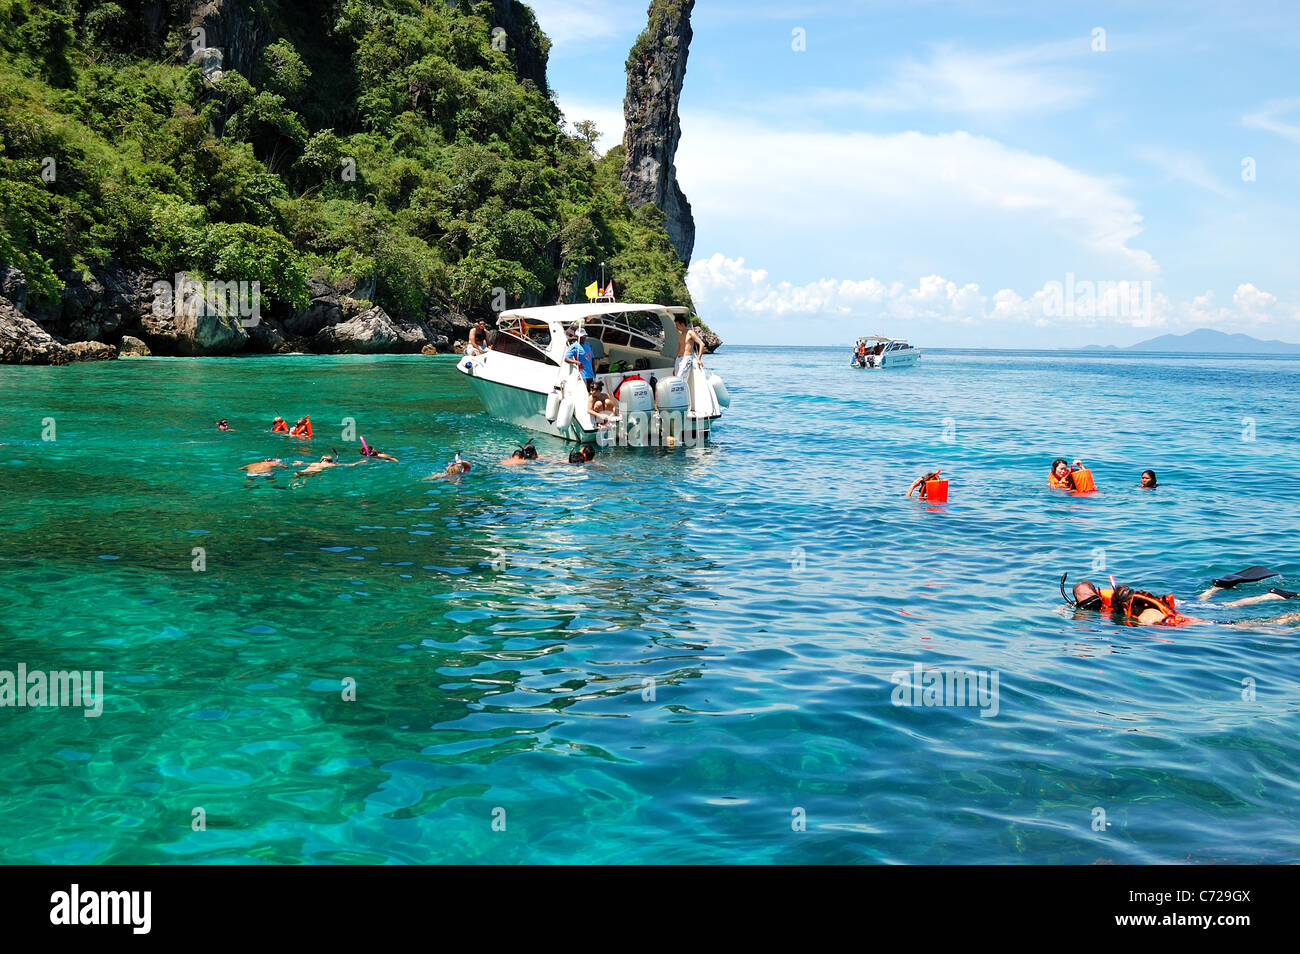 Plongée avec tuba les touristes sur l'eau turquoise du lagon, Maya Bay Koh Phi Phi Island, Thaïlande Banque D'Images